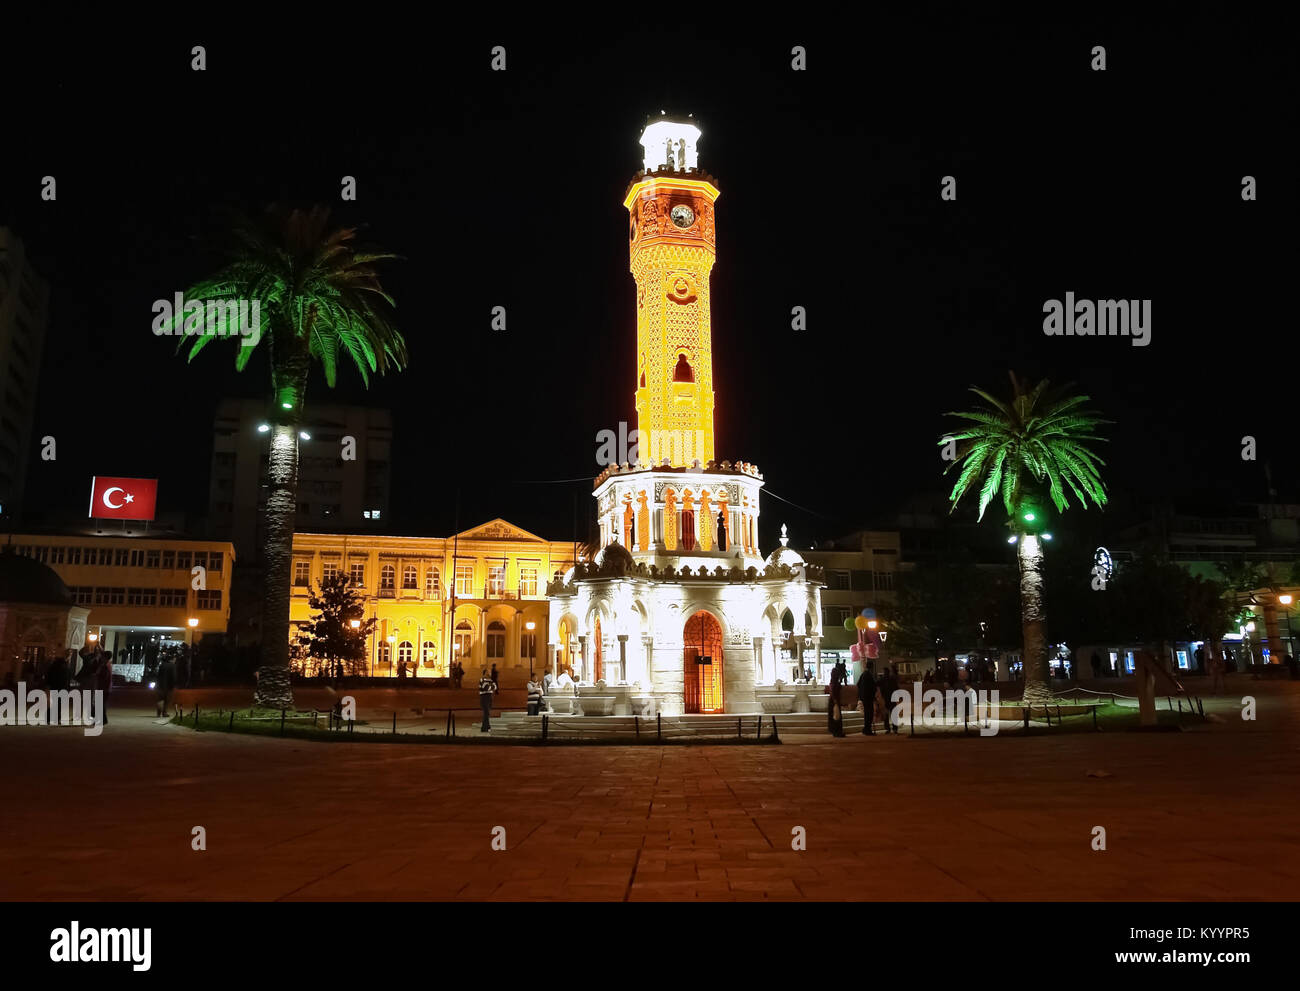 Izmir, Türkei - 24 April 2012: Der Uhrturm auf dem Hauptplatz in Konak in Izmir in der Nacht, in der Türkei. Saat Kulesi (Izmir Uhrturm) ist ein Sym Stockfoto